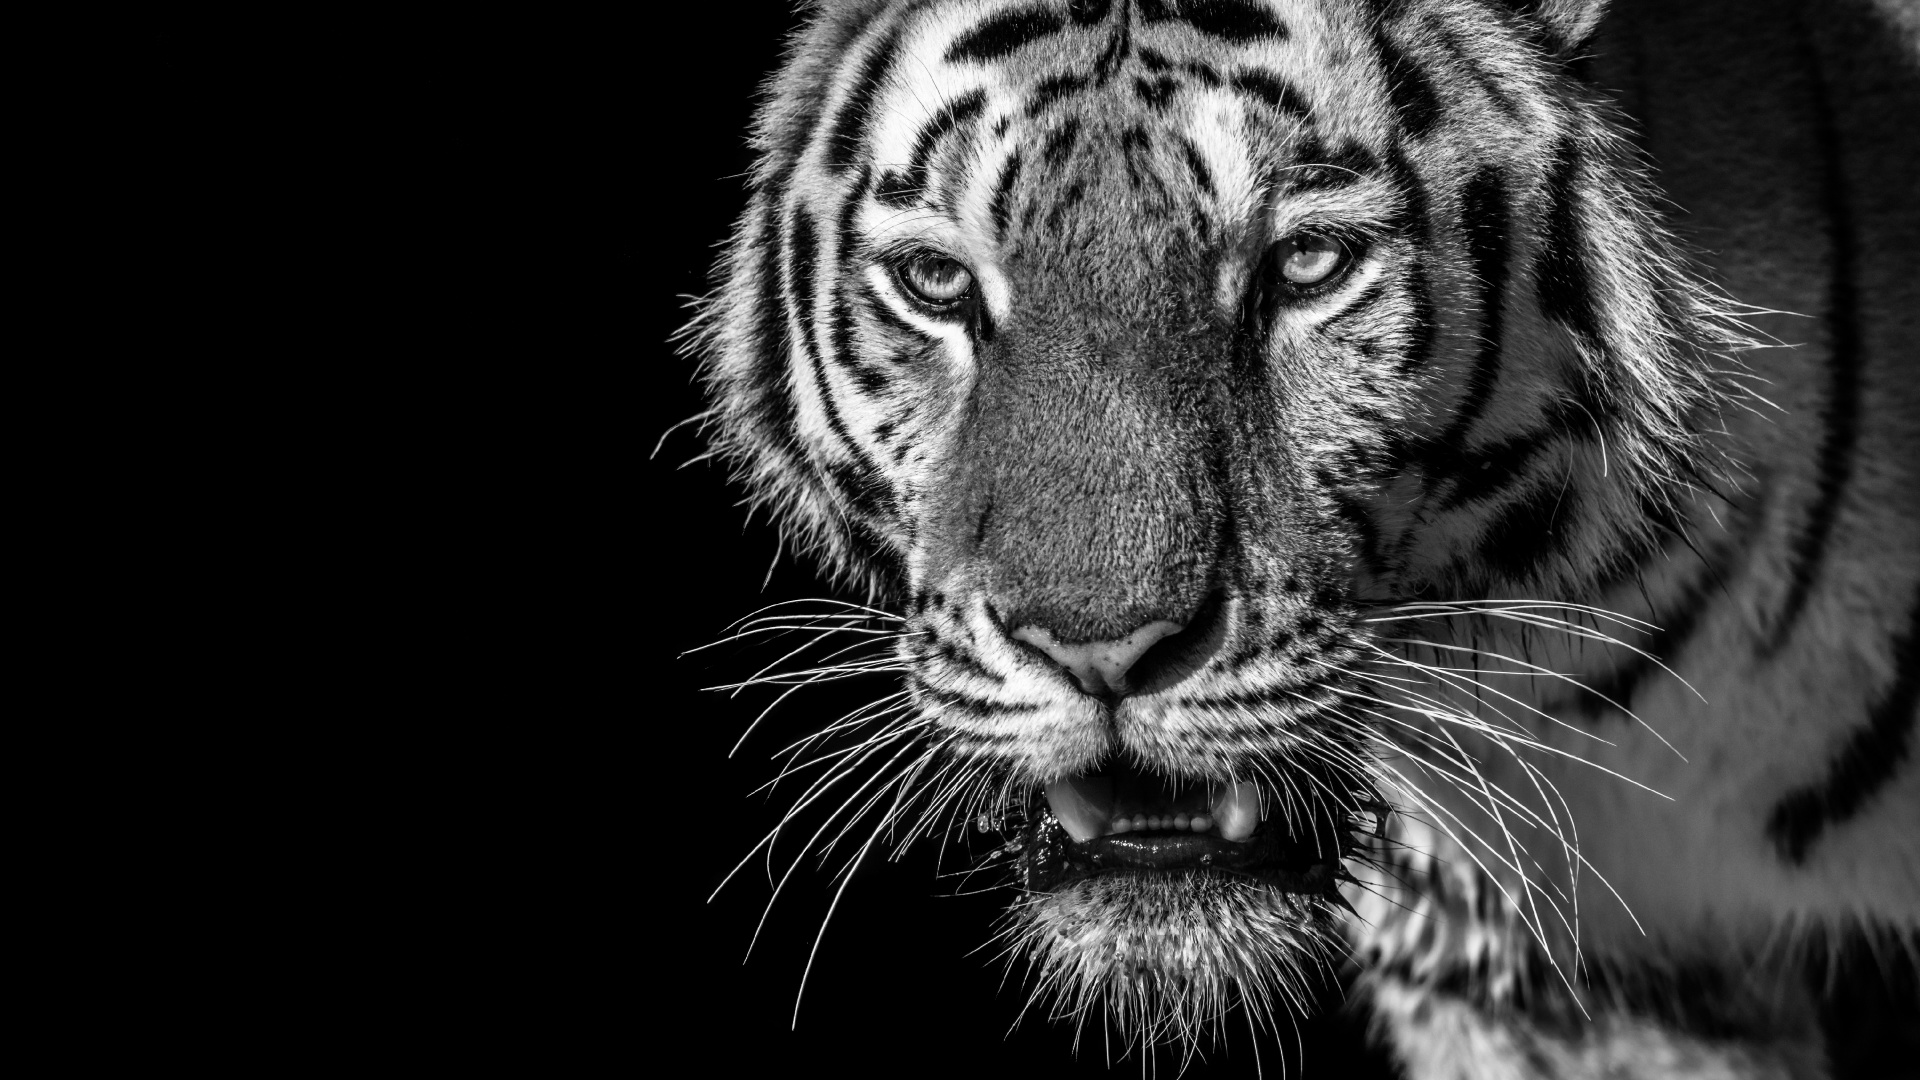 老虎, 白虎, 孟加拉虎, 野生动物, 胡须 壁纸 1920x1080 允许